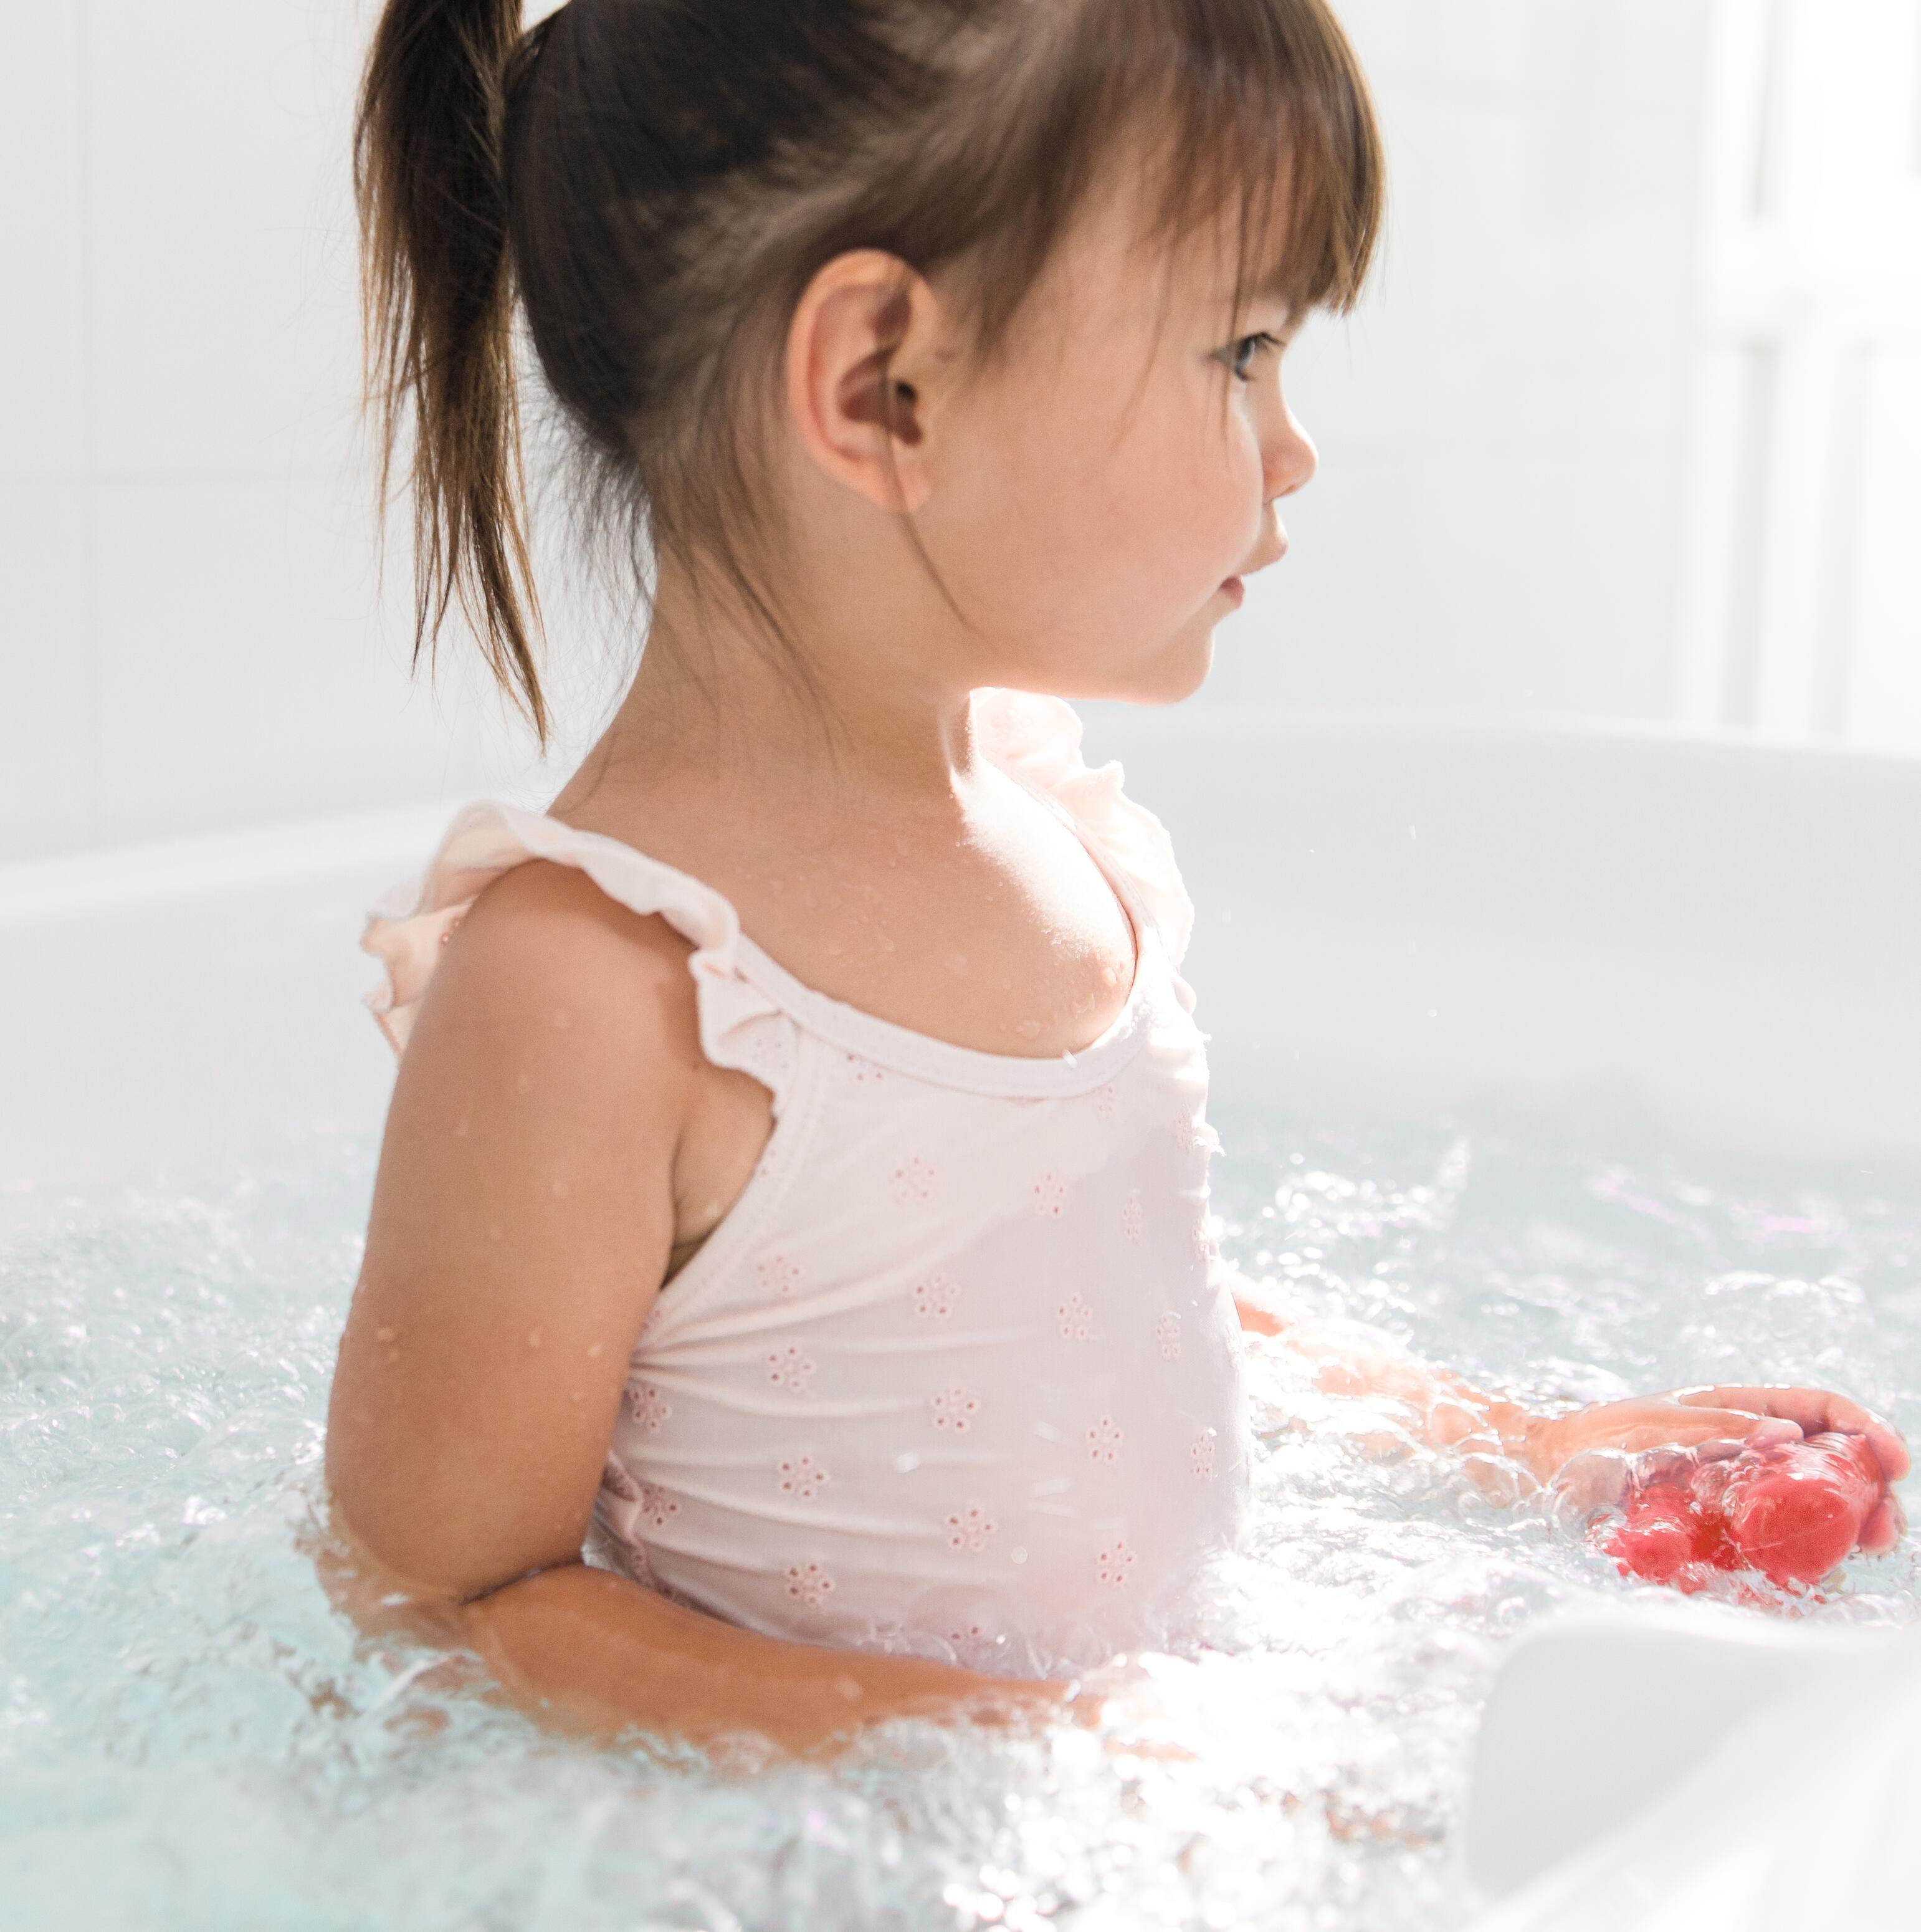 Eccema y psoriasis: ¿mi hijo puede bañarse?